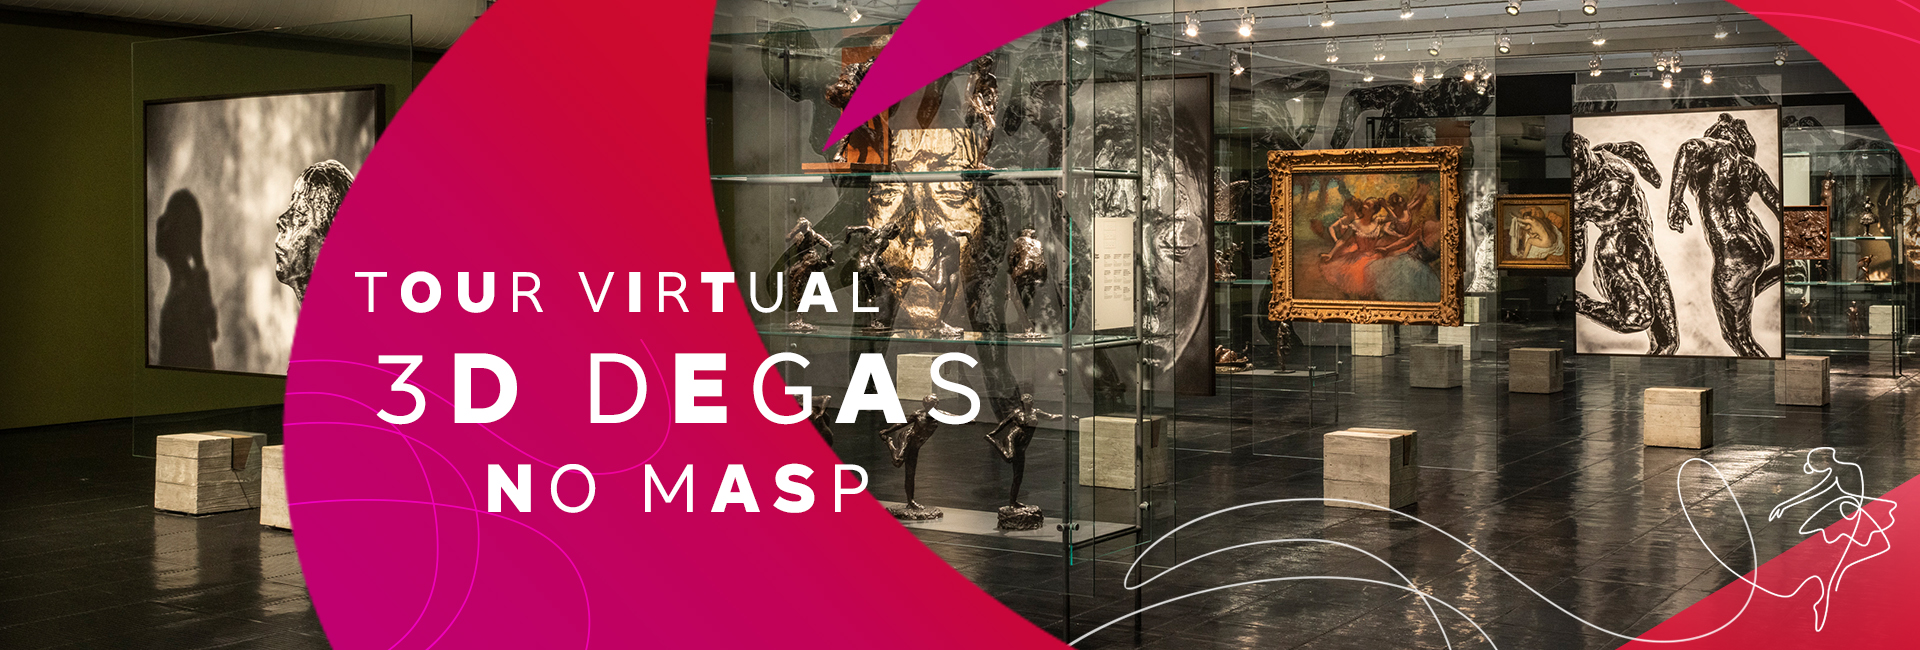 Degas Tour Virtual